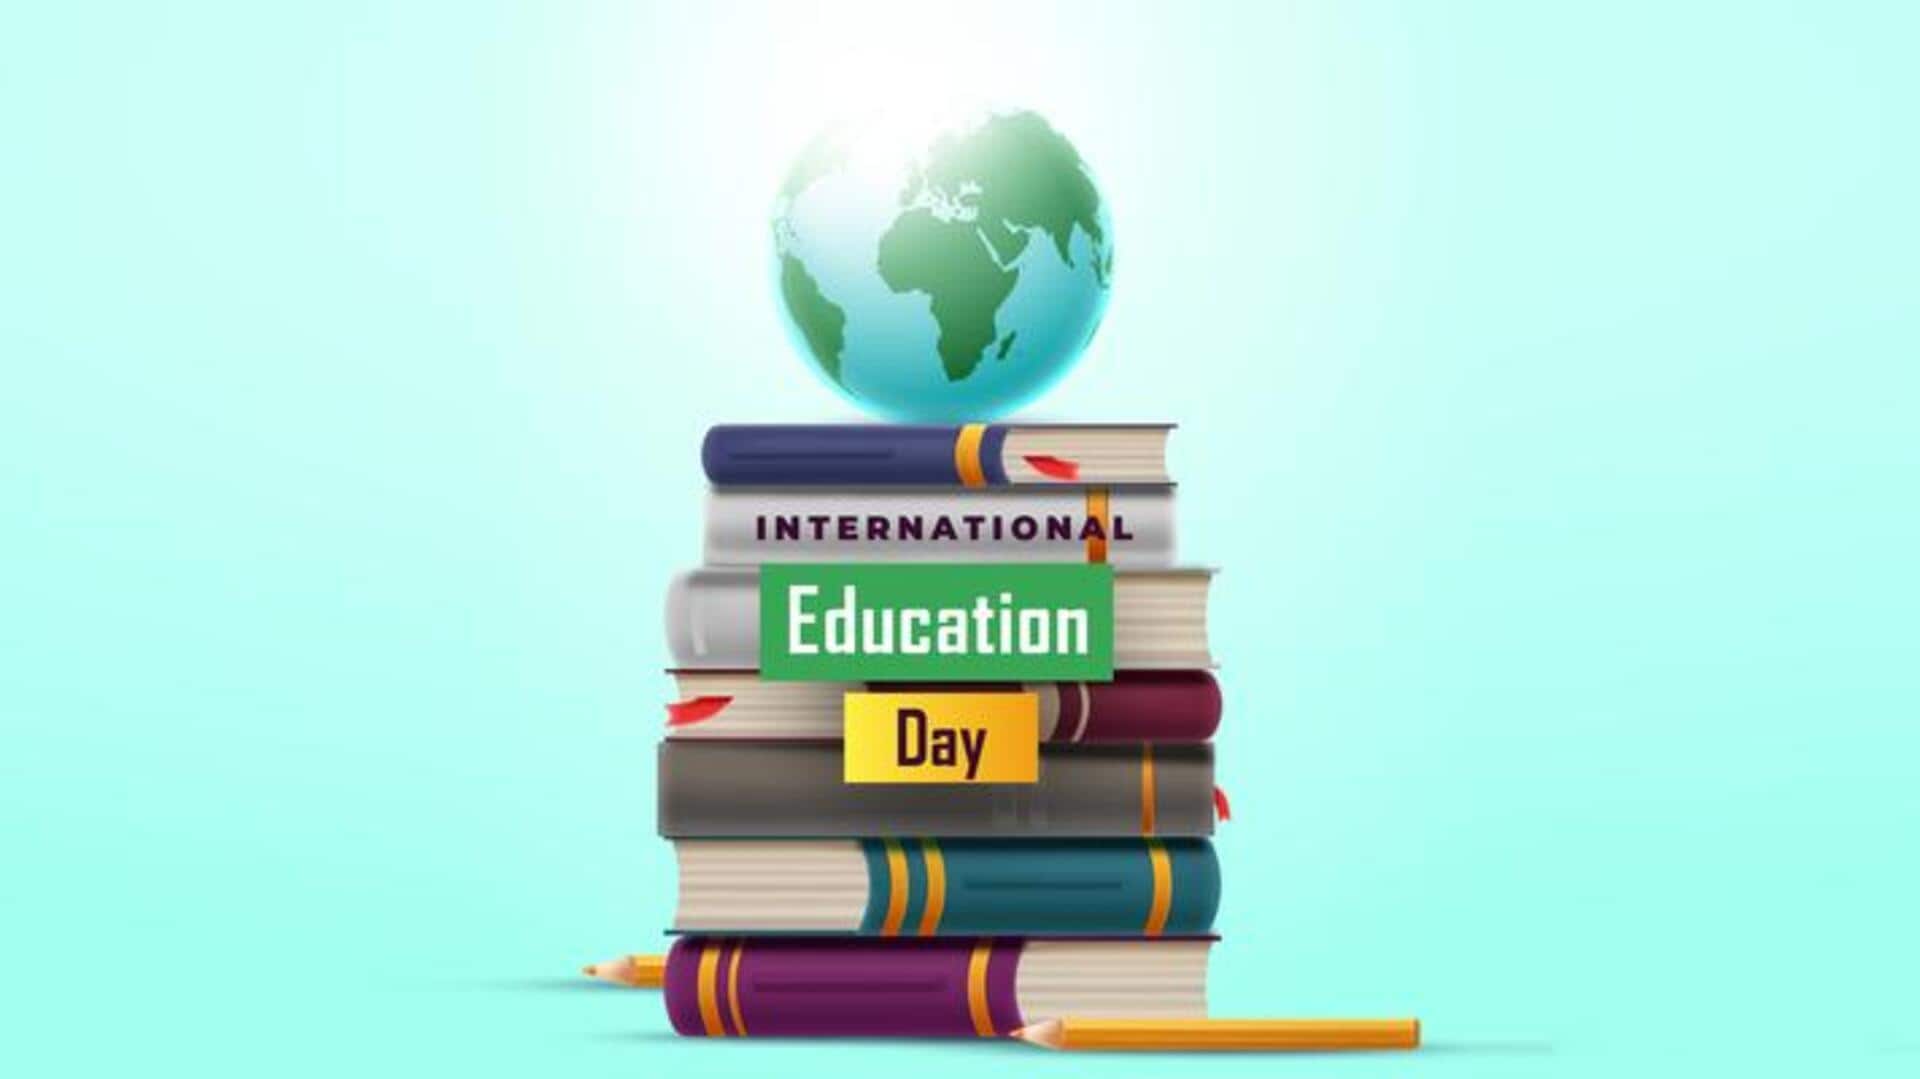 आज दुनियाभर में मनाया जा रहा है अंतरराष्ट्रीय शिक्षा दिवस, जानें इतिहास और महत्व